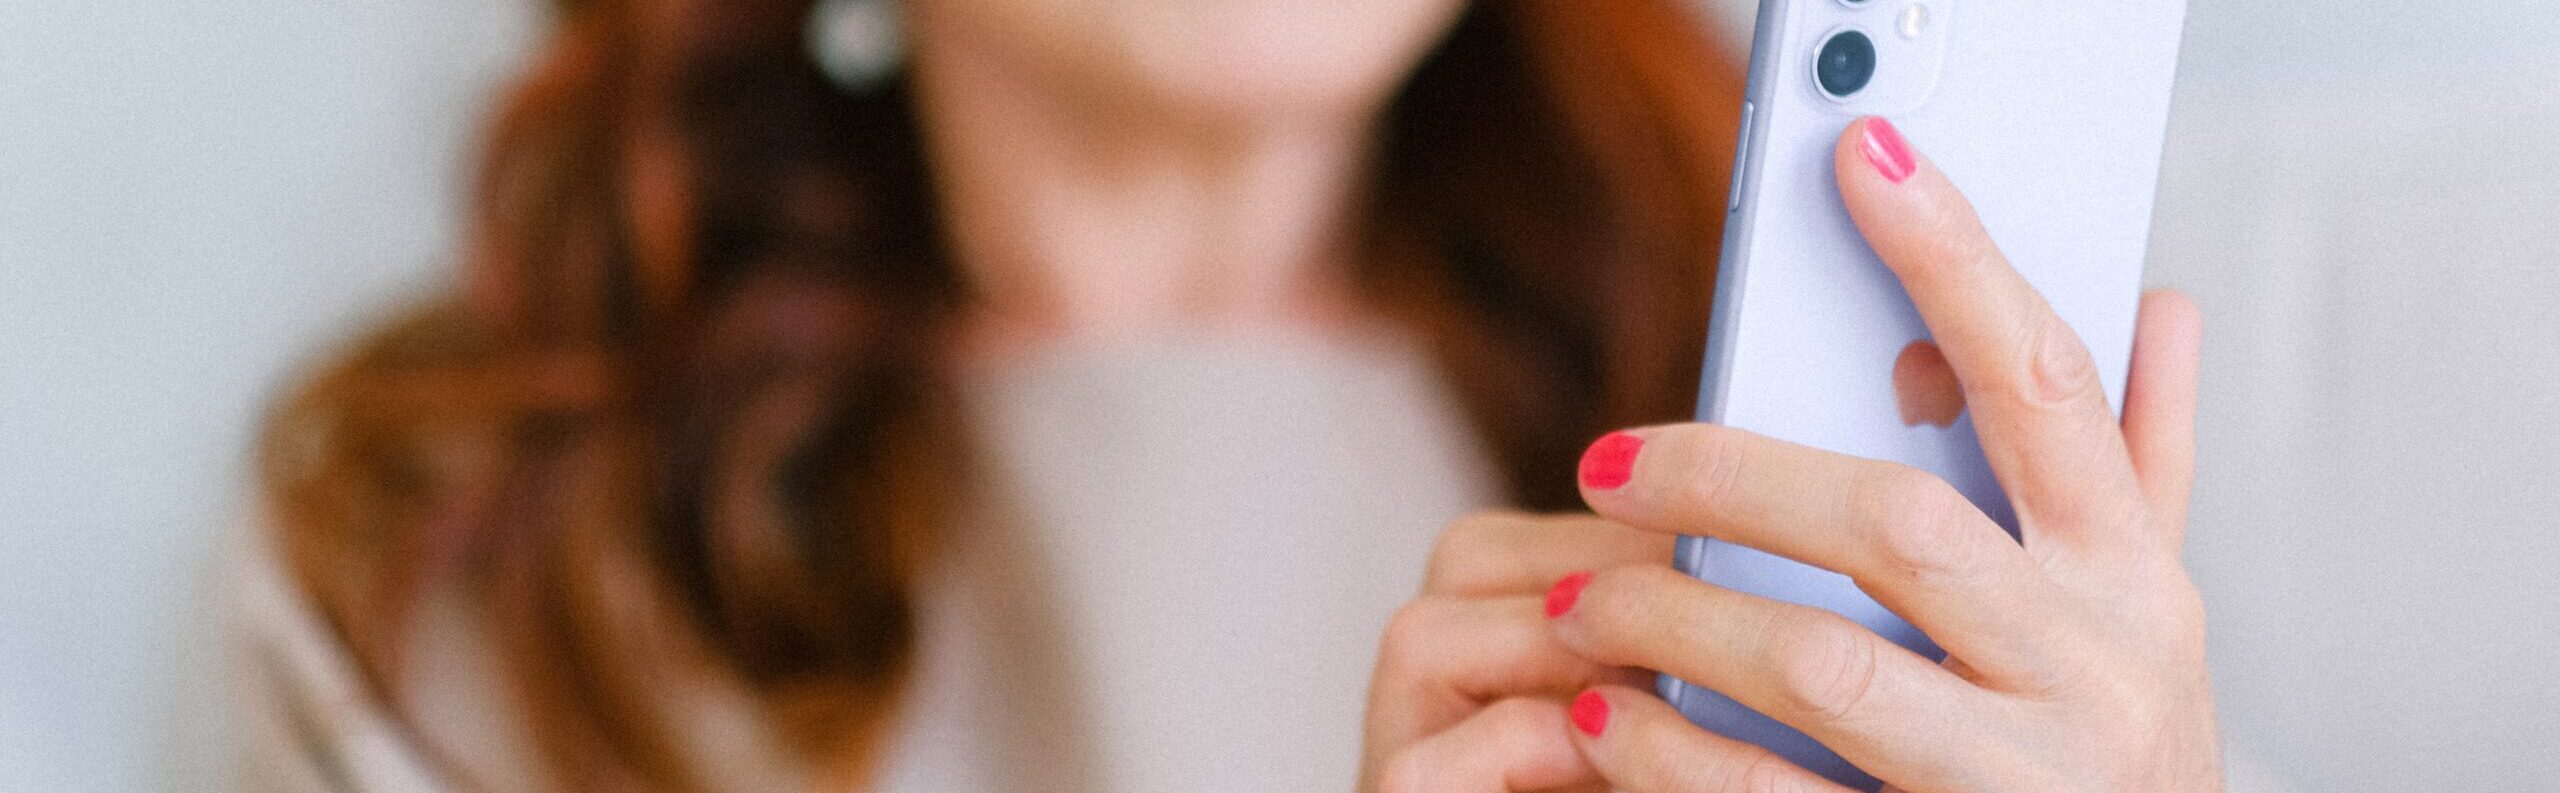 En kvinna i rött hår och rosa nagellack håller en ljuslila telefon. Telefonen är i fokus och bakgrunden suddig.